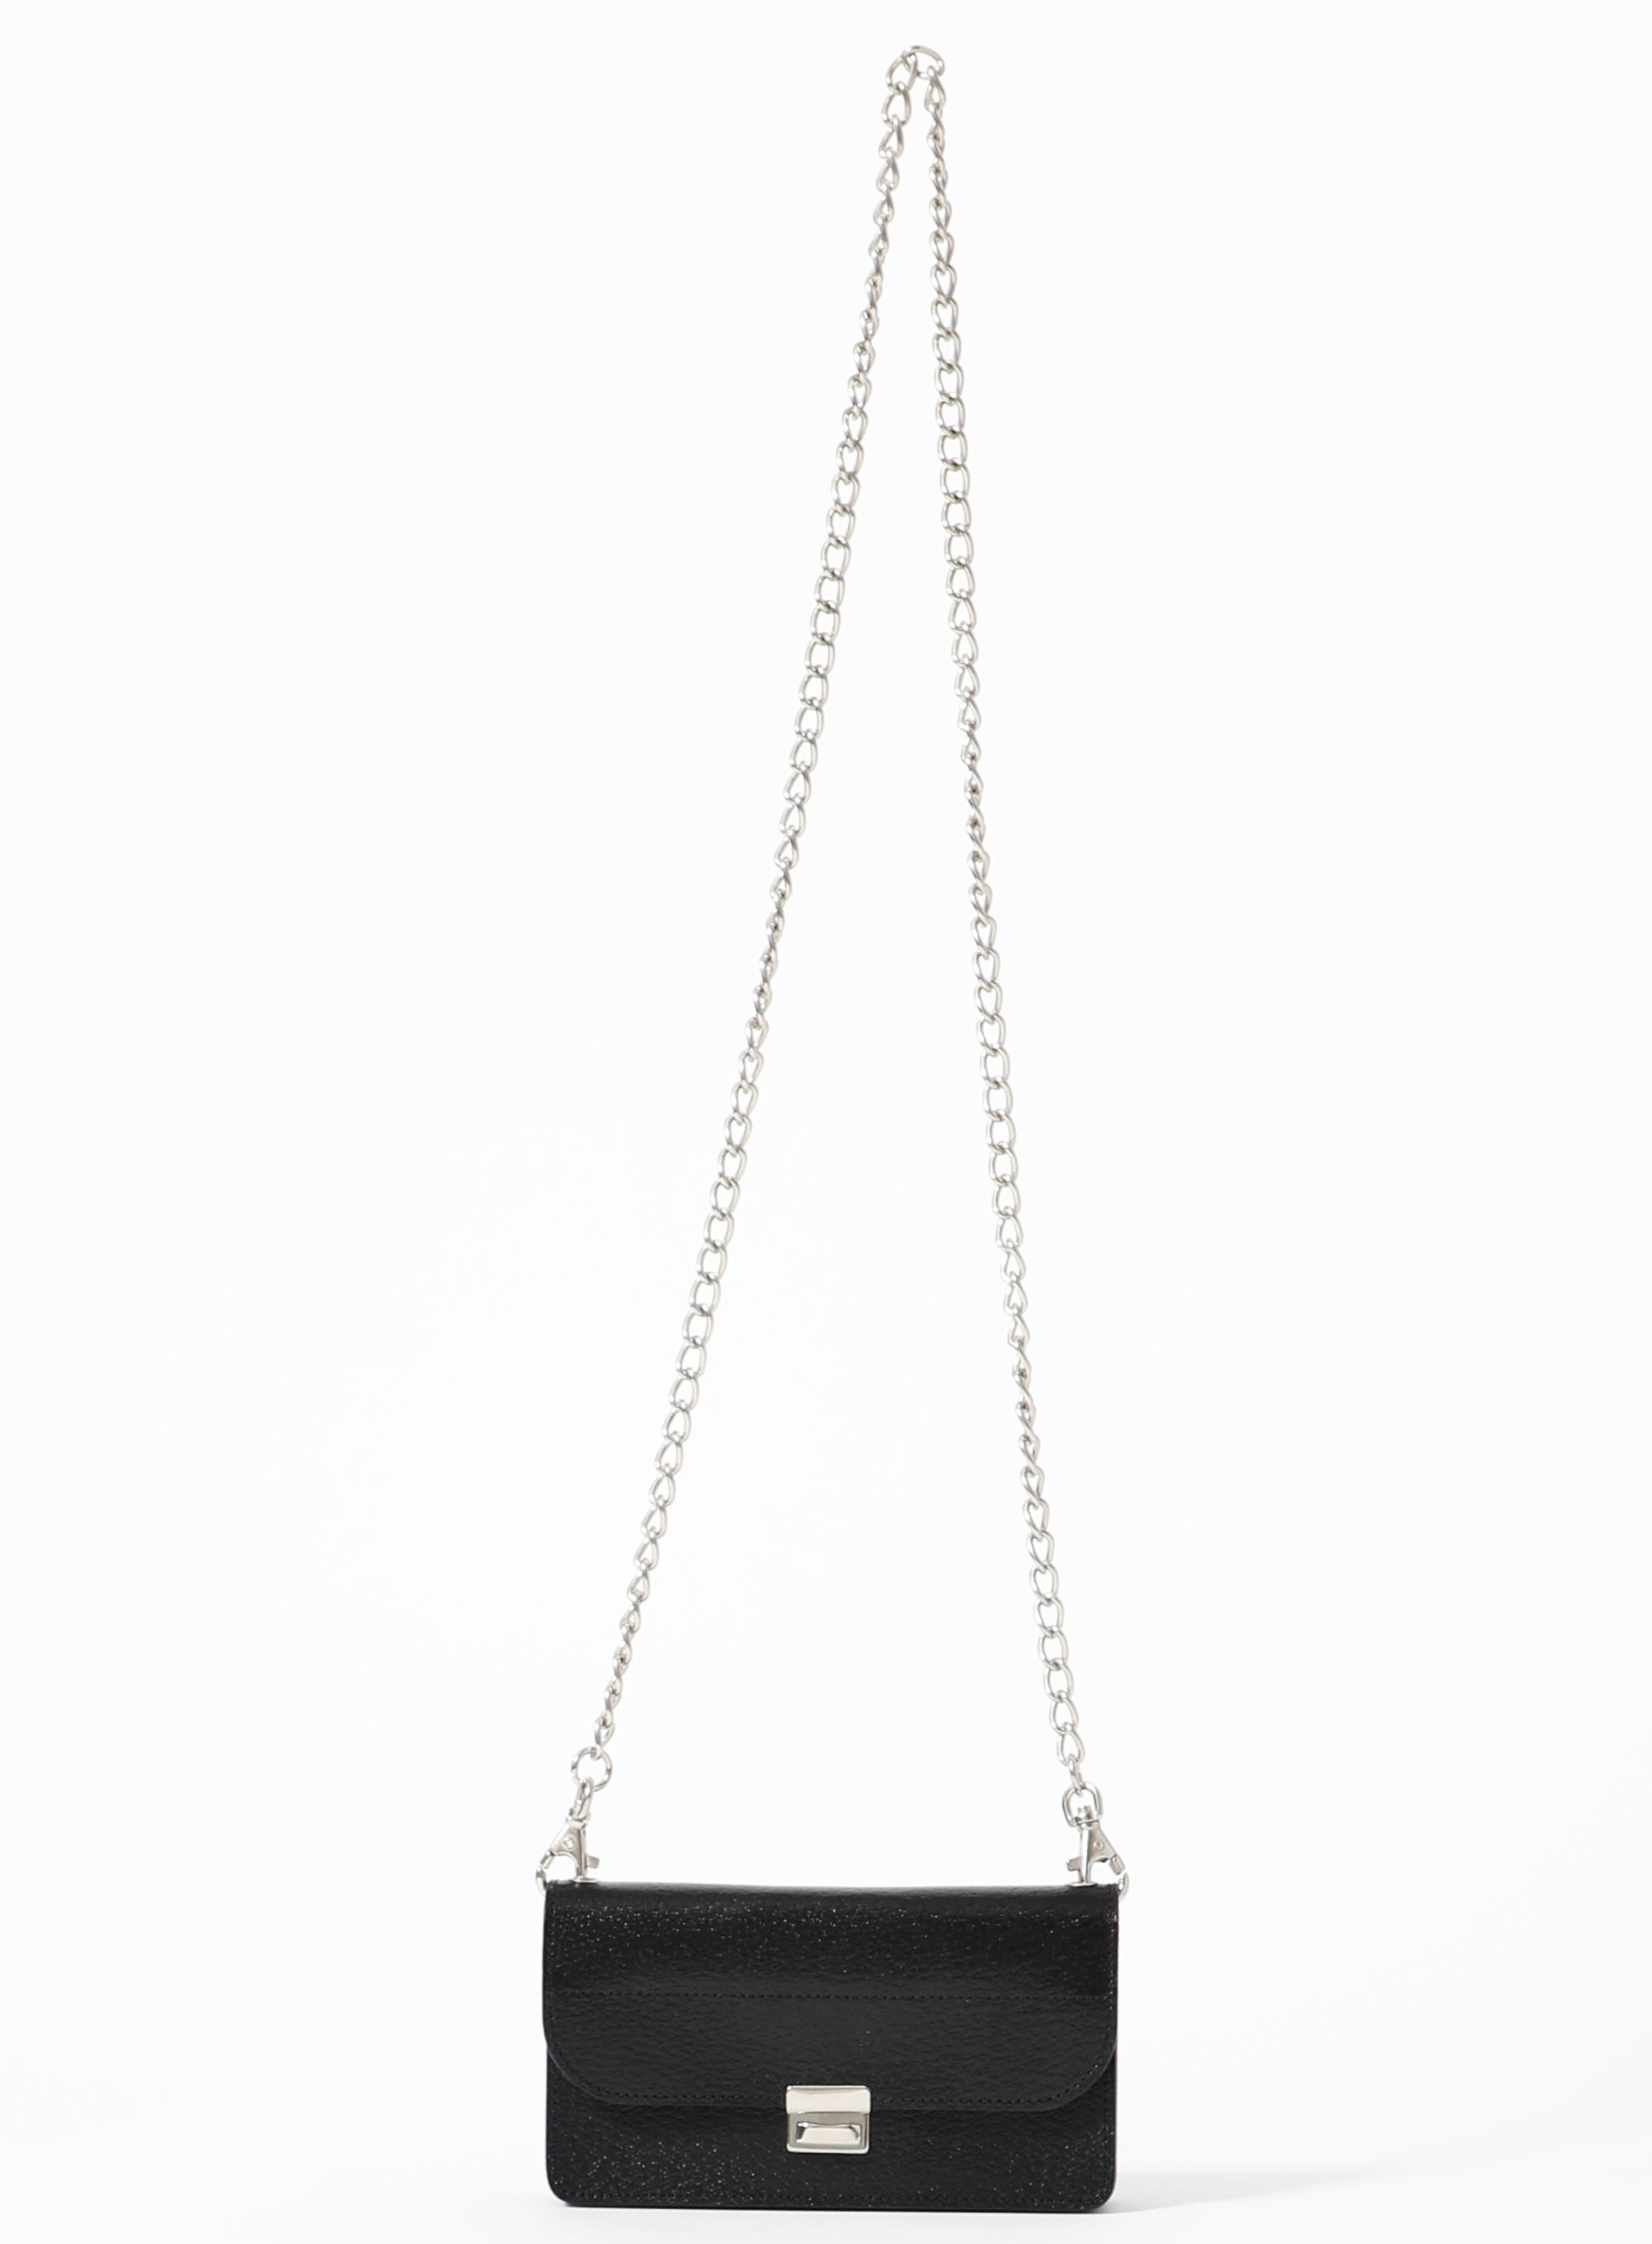 Brand New -Hermes Mini Constance 18 shoulder bag in bleu royal